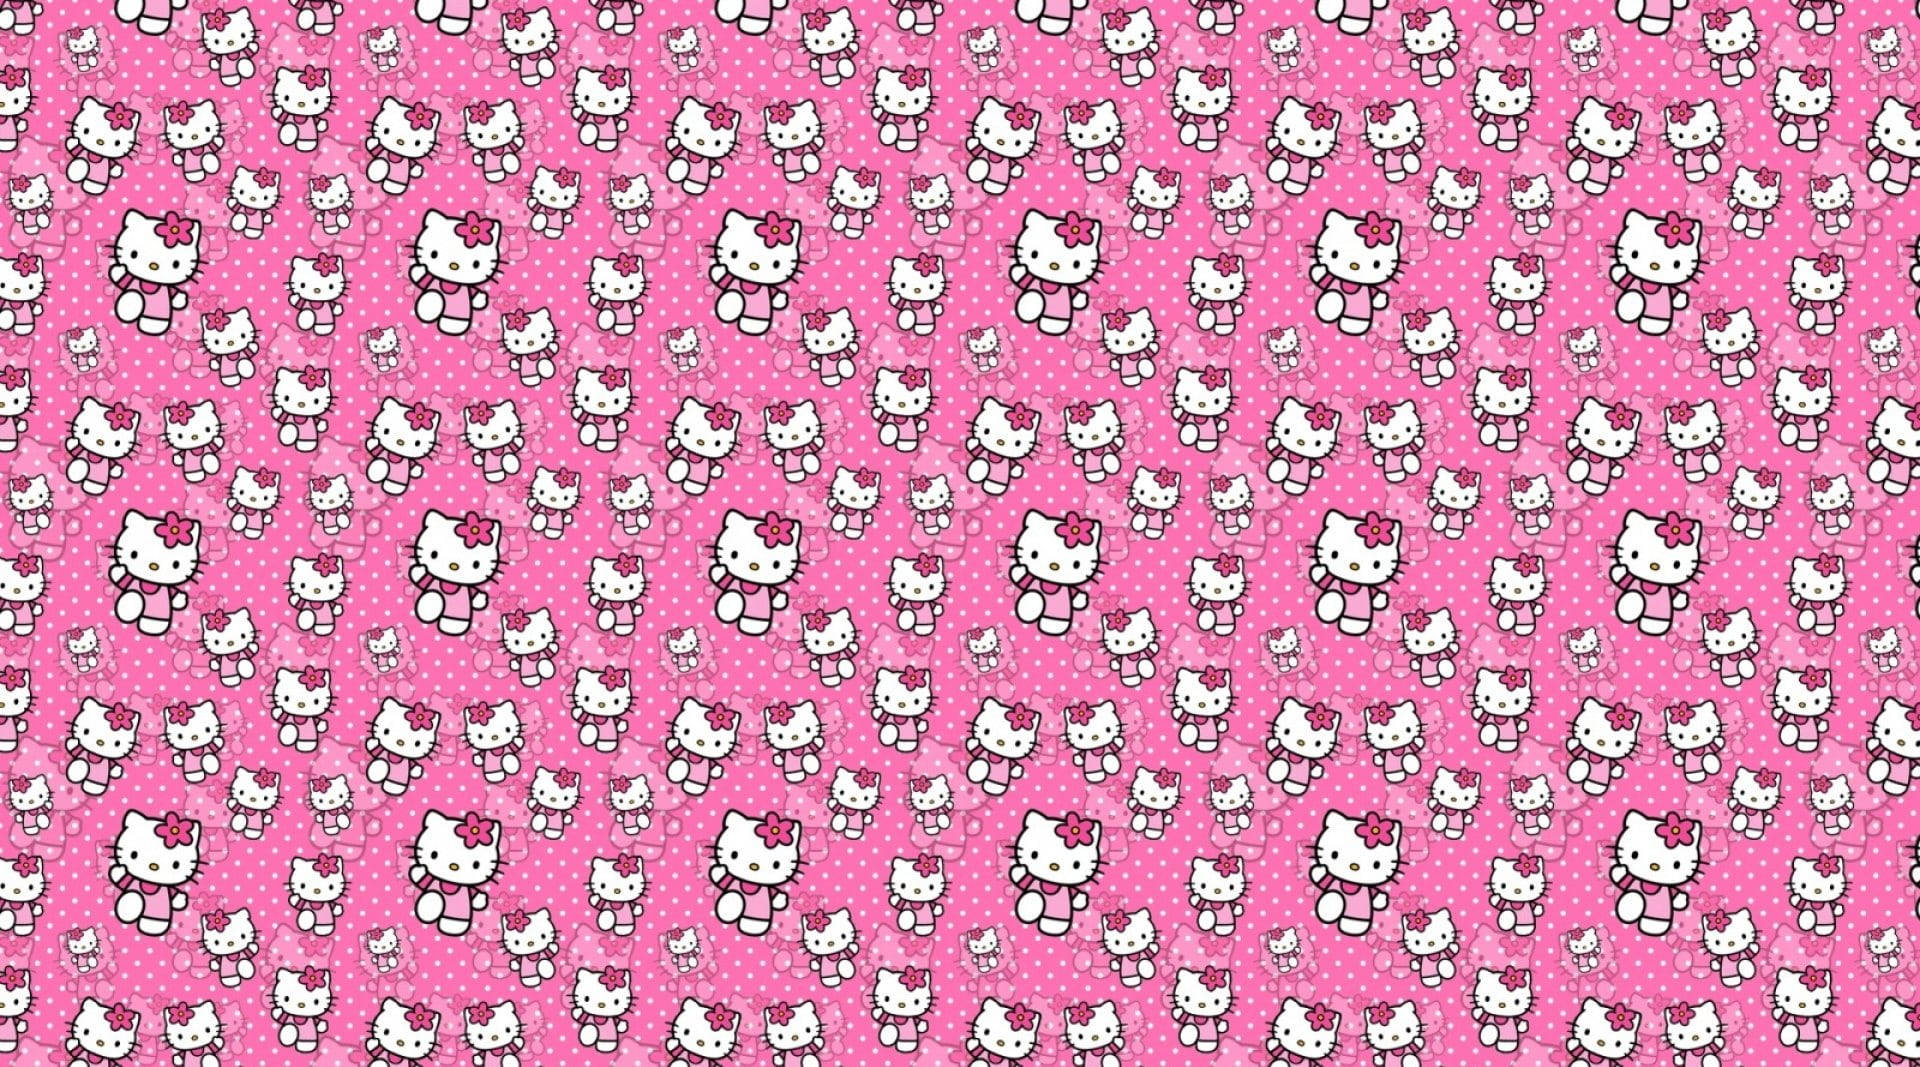 Hãy đắm mình trong không gian màu hồng ngọt ngào và Hello Kitty xinh đẹp! Hình nền này sẽ khiến bạn phải say đắm với sự trẻ trung, dễ thương và đáng yêu của chú mèo con đang chơi đùa trên nền hồng tươi tắn.